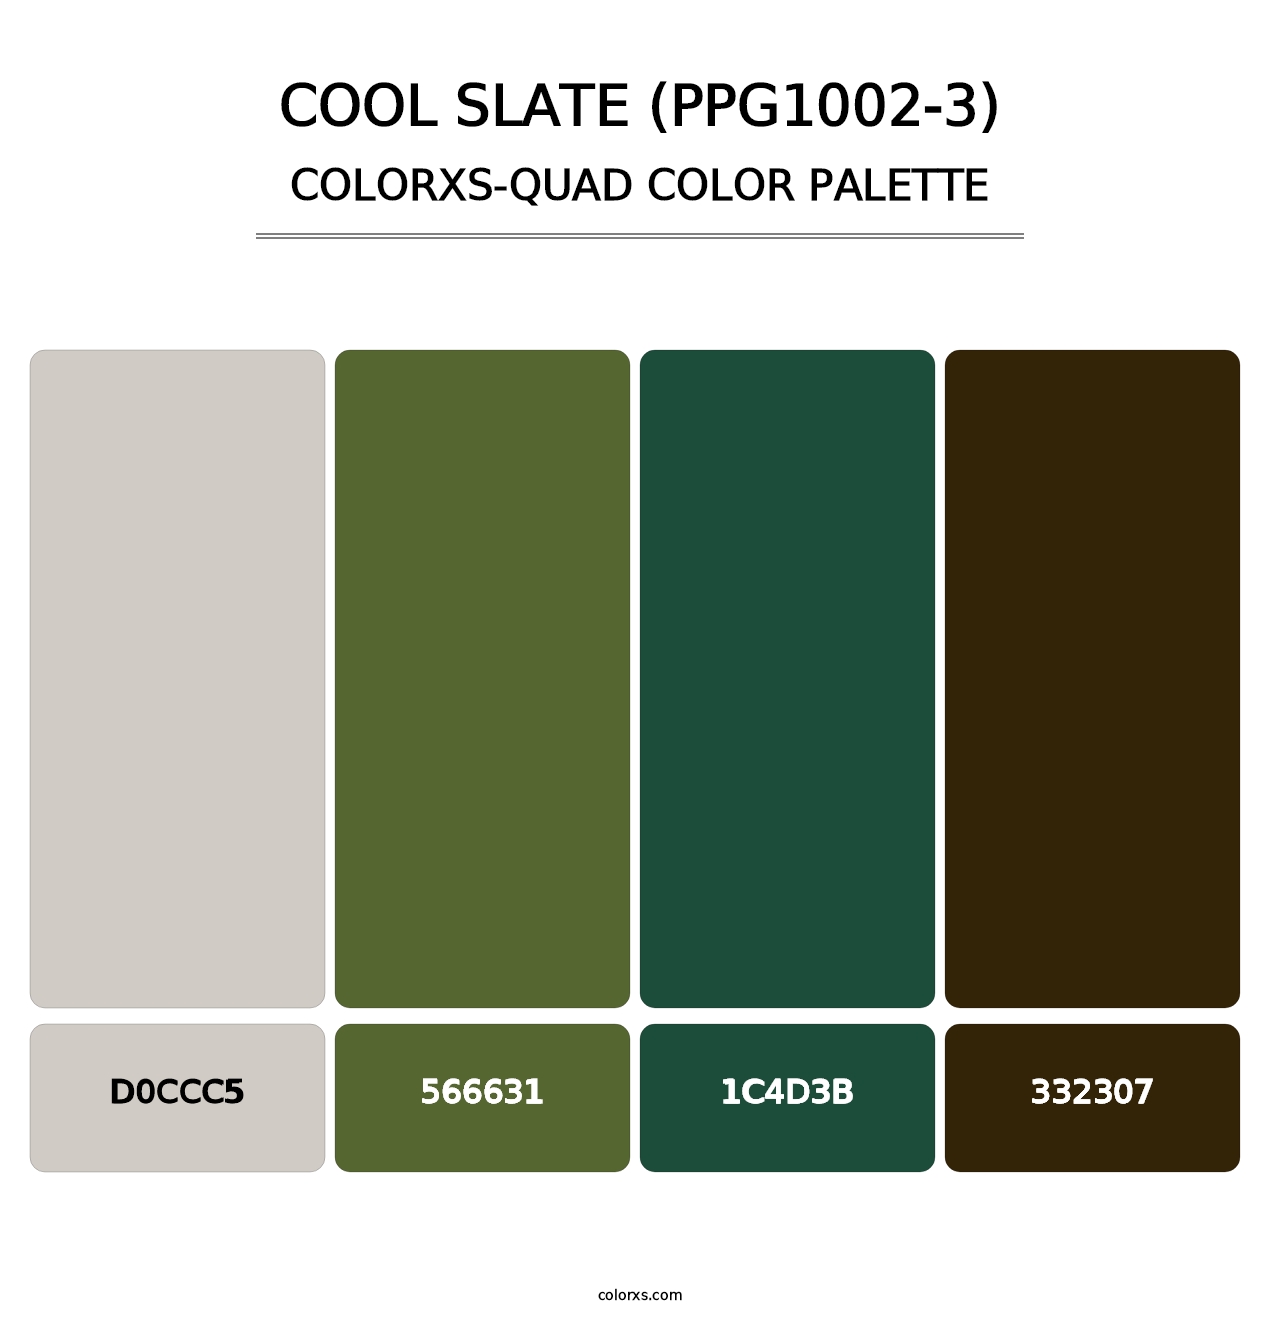 Cool Slate (PPG1002-3) - Colorxs Quad Palette